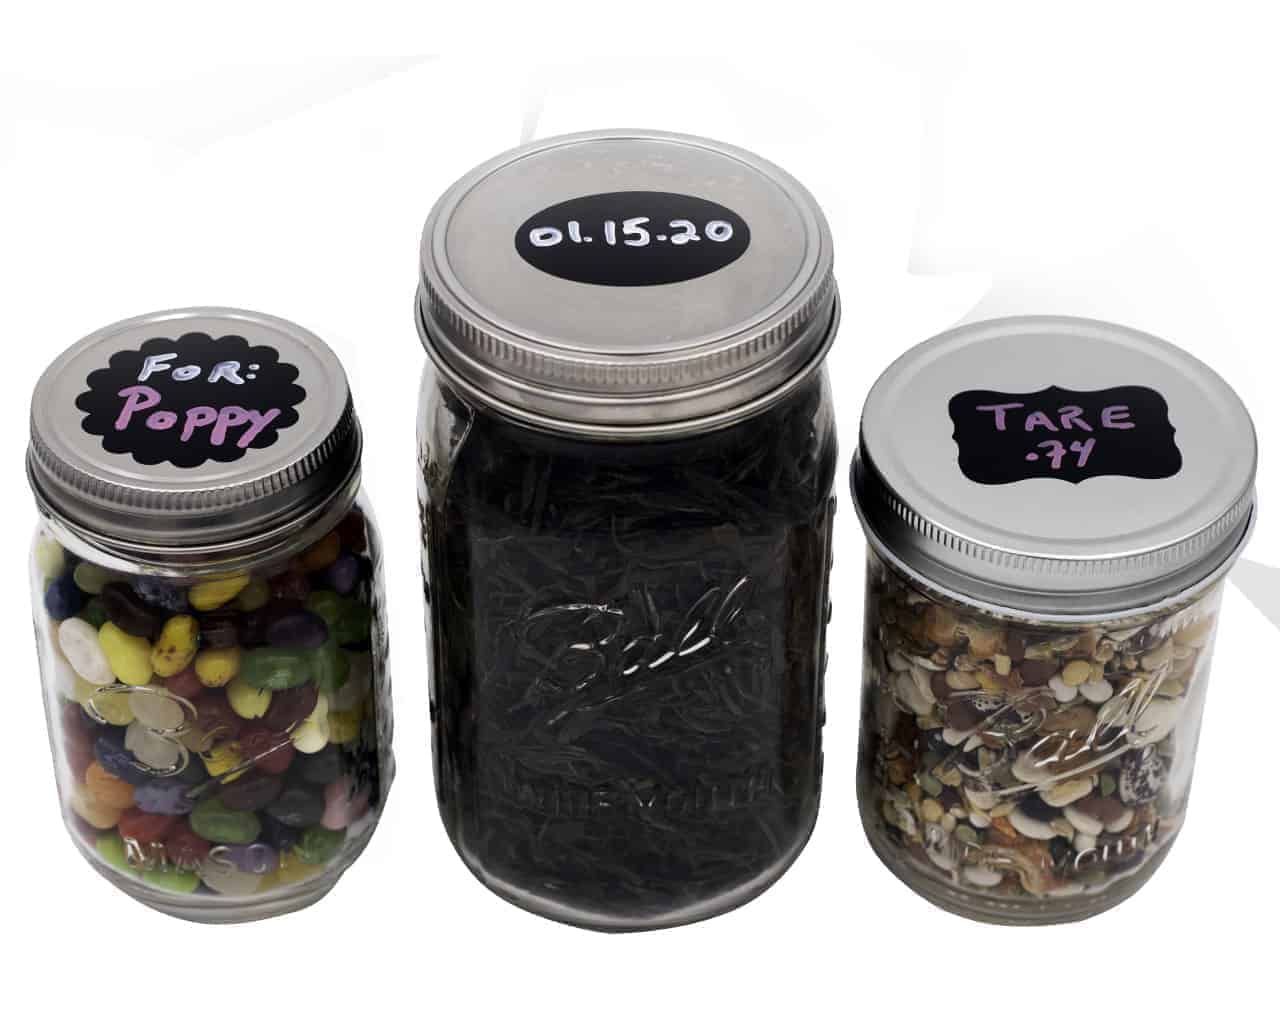 chalkboard style spice jar labels